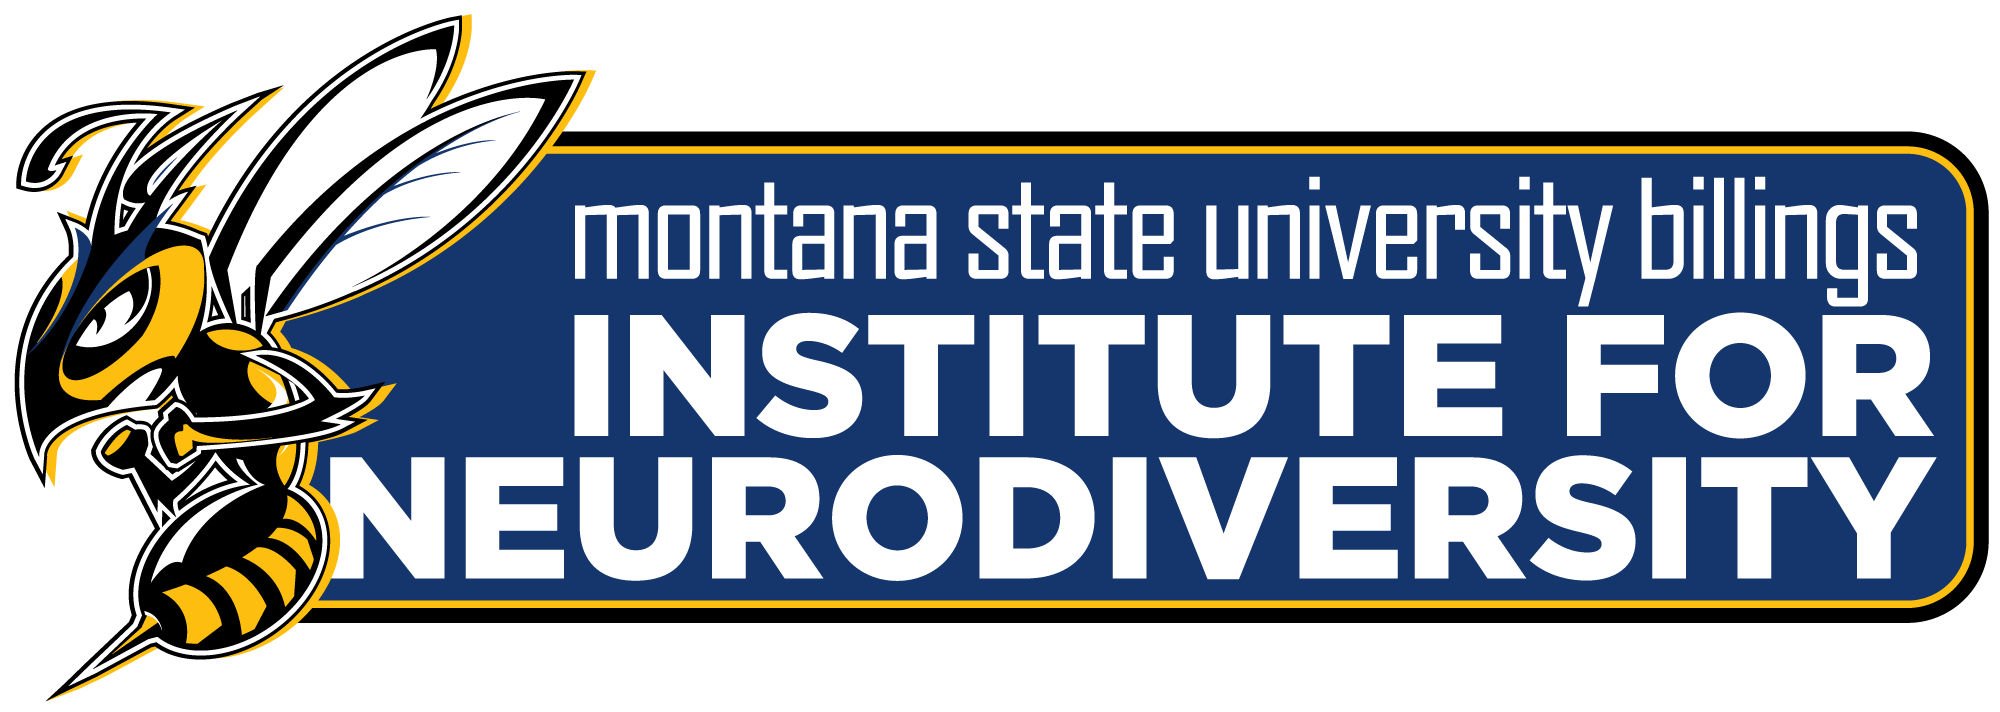 Institute for Neurodiversity - logo